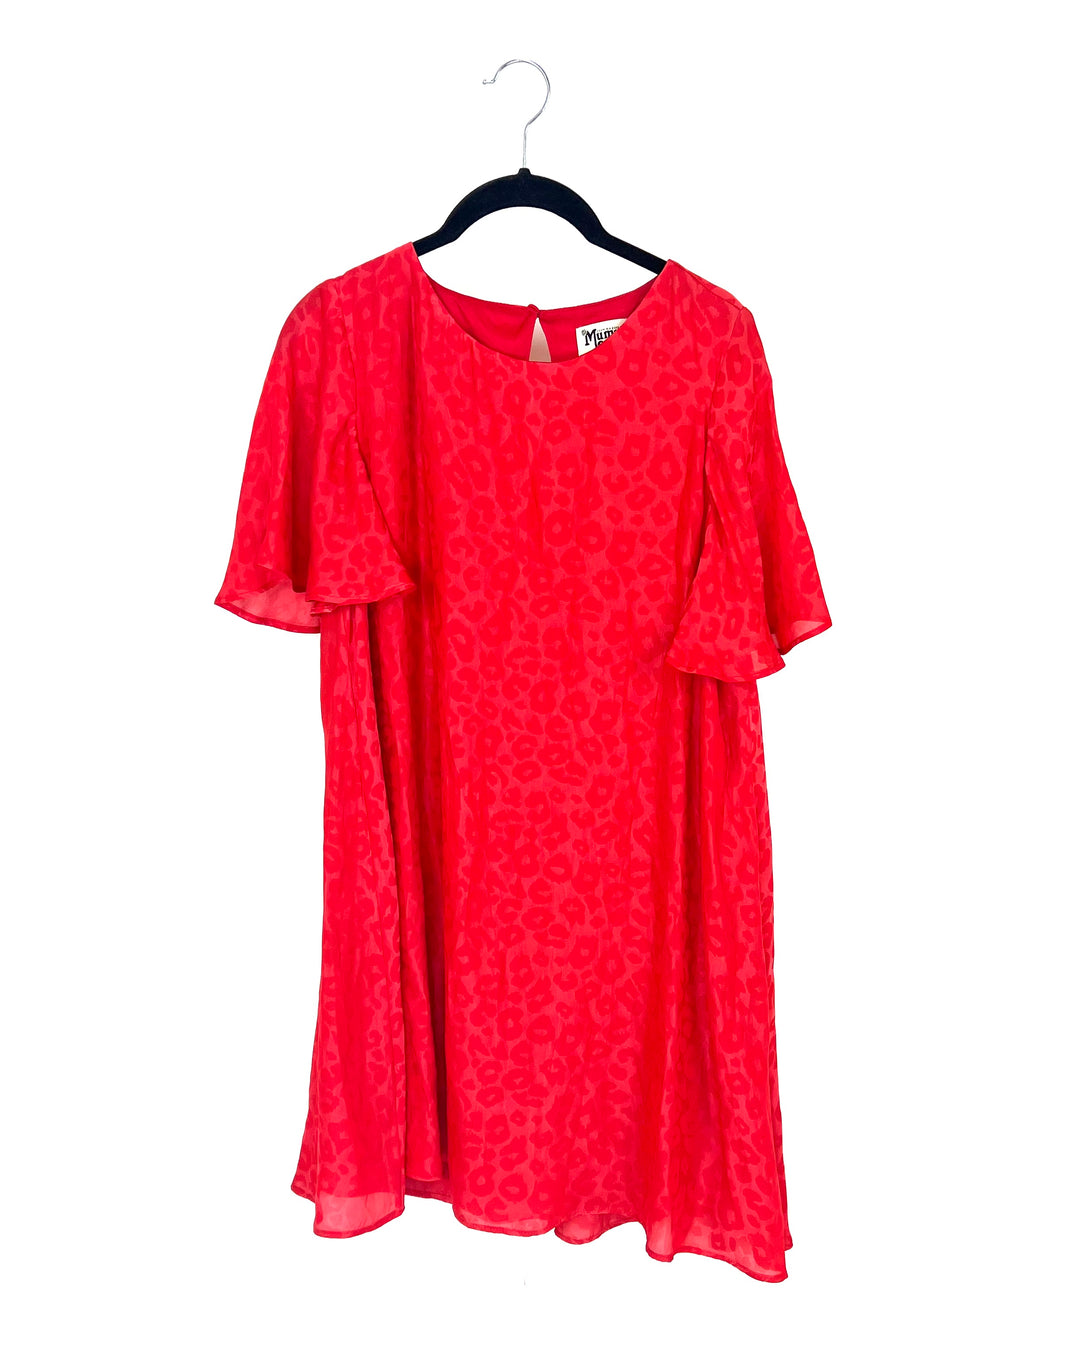 Red Cheetah Print Mini Dress - Size 4/6